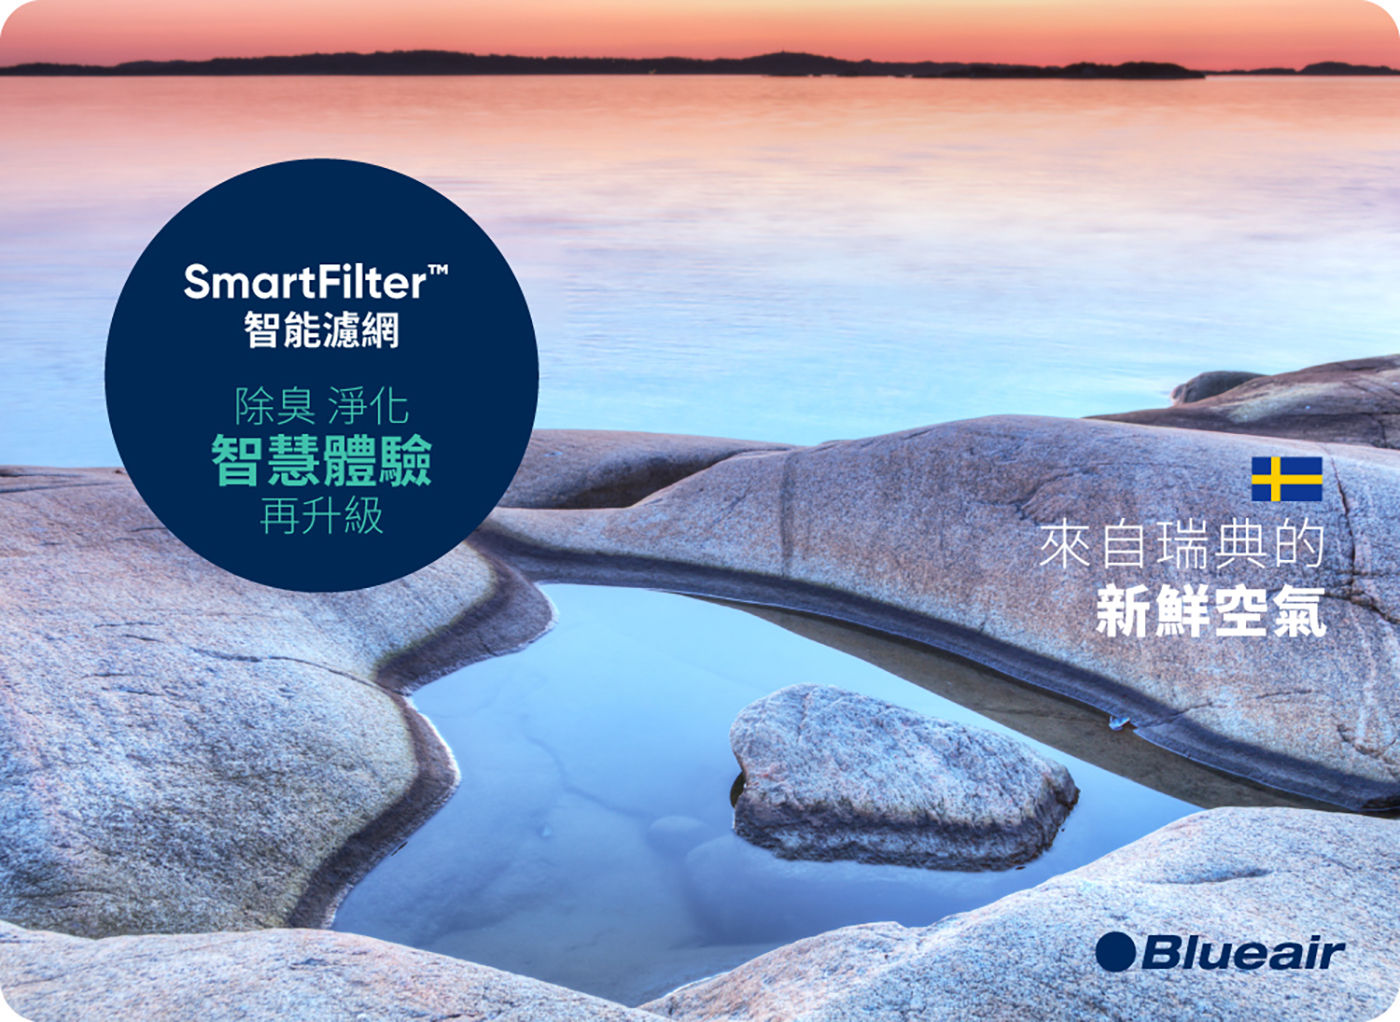 Blueair 7300系列 SmartFilter 智能濾網 除臭 淨化